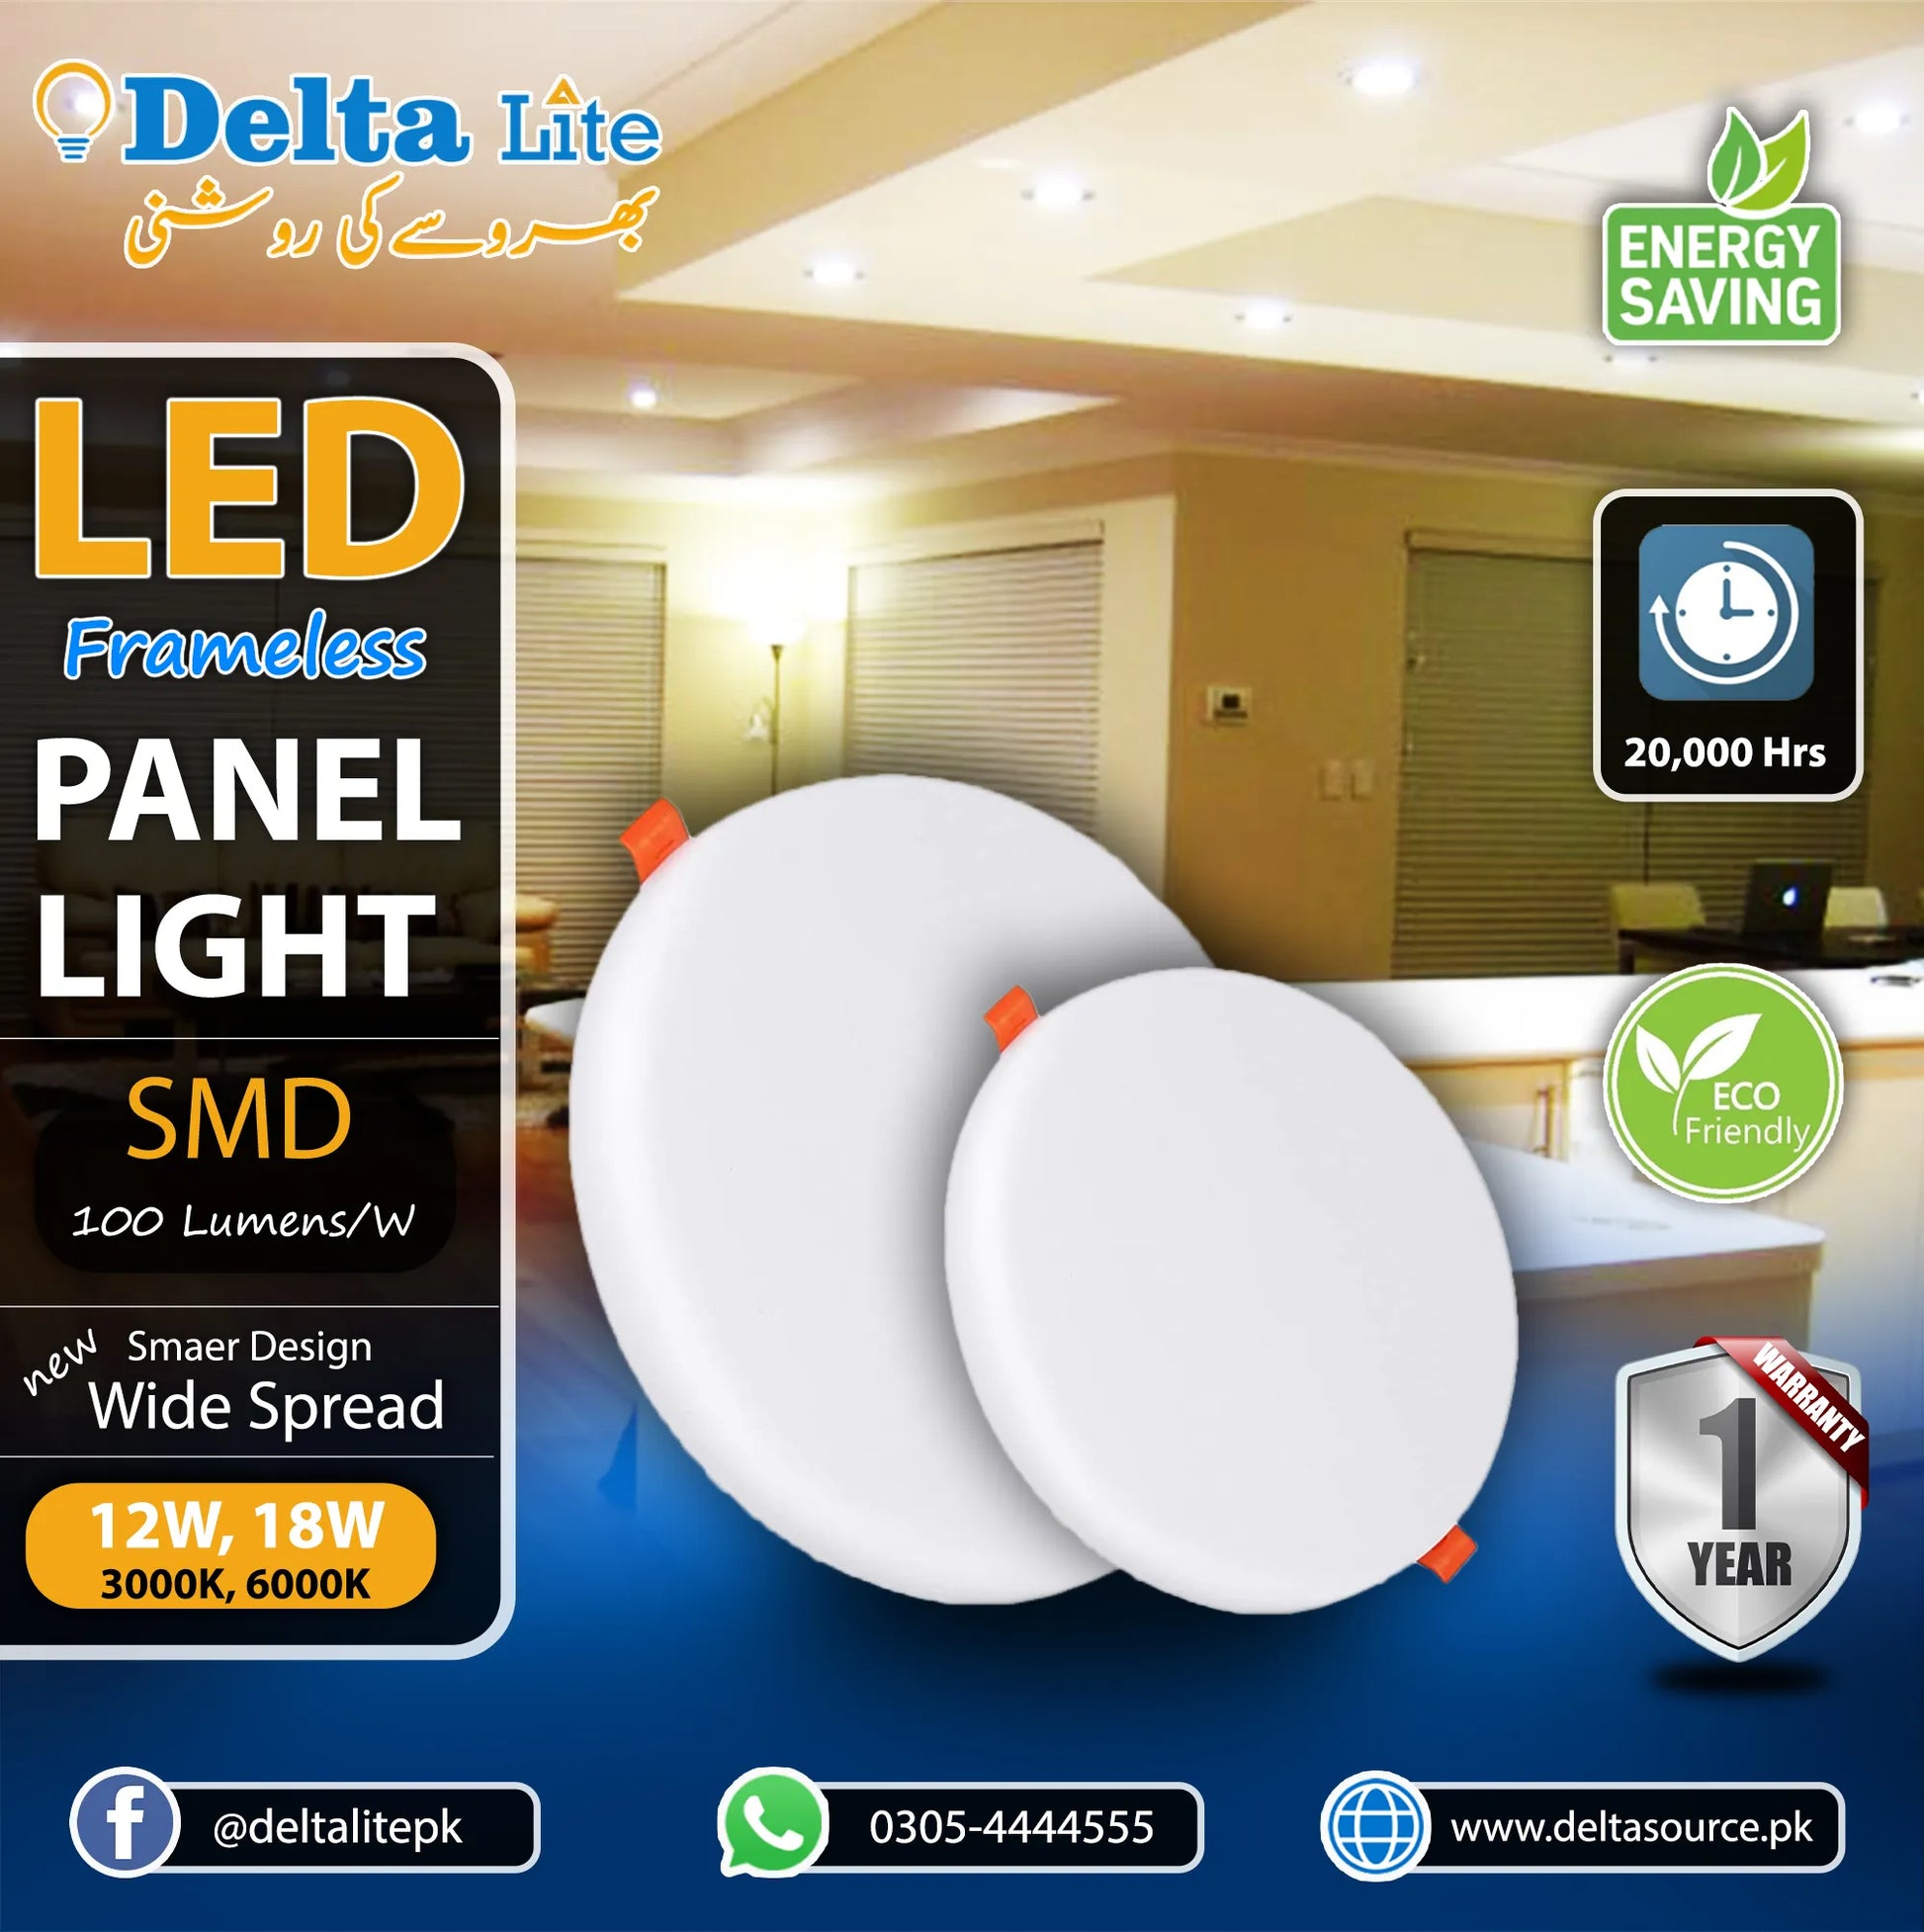 18 W LED Frameless Ceiling Panel Light 6"